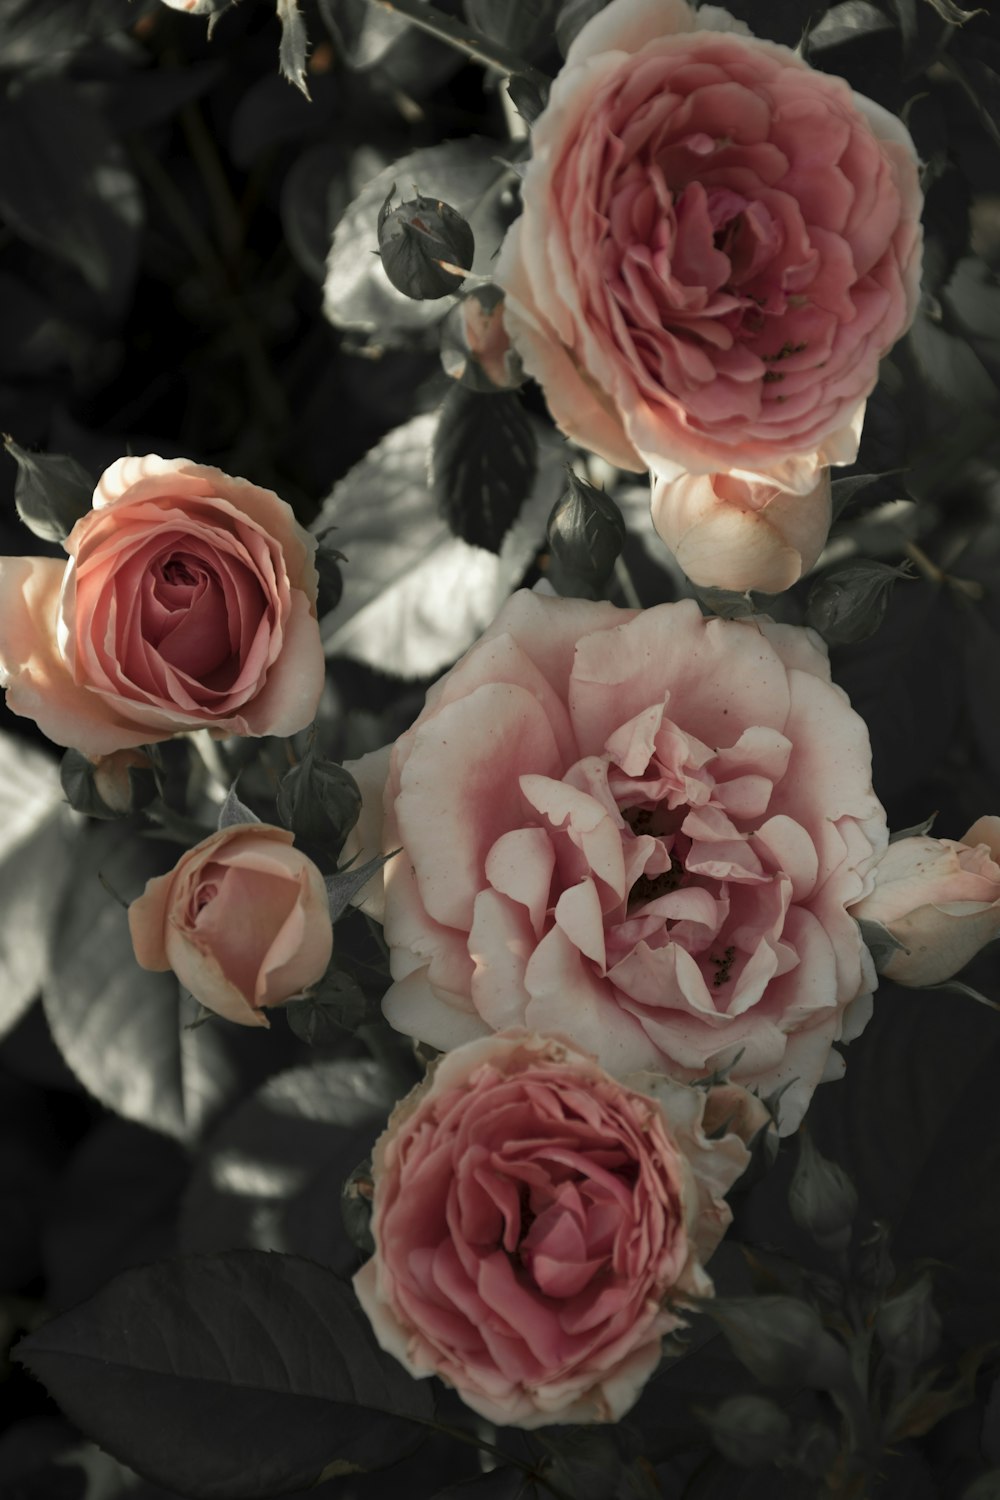 Vintage Rose Pictures | Download Free Images on Unsplash